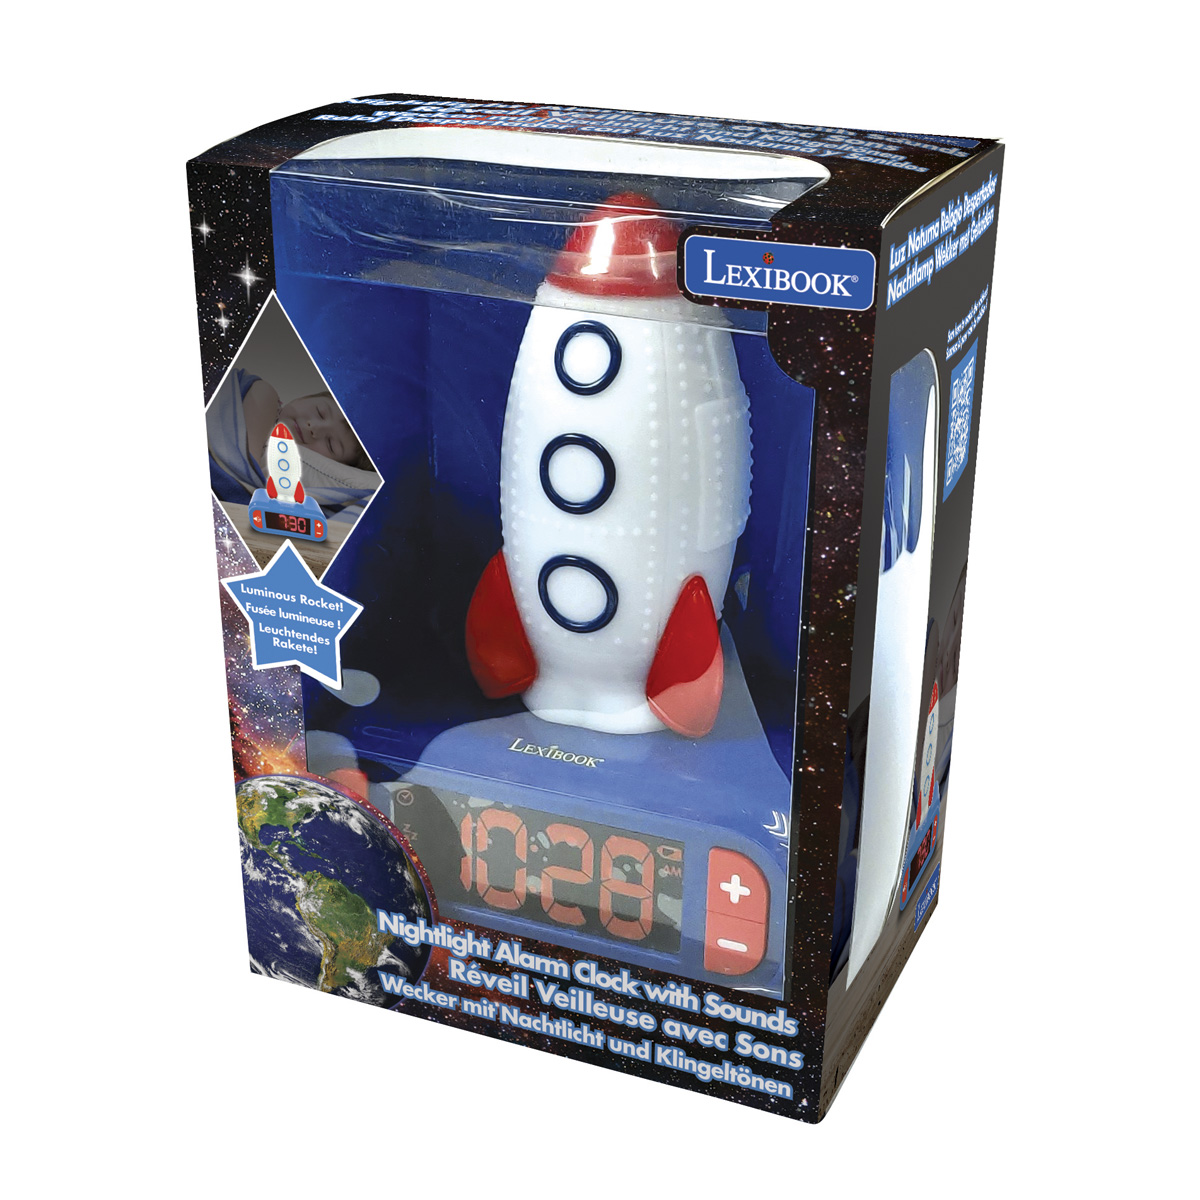 LEXIBOOK Rakete mit 3D Wecker Nachtlicht